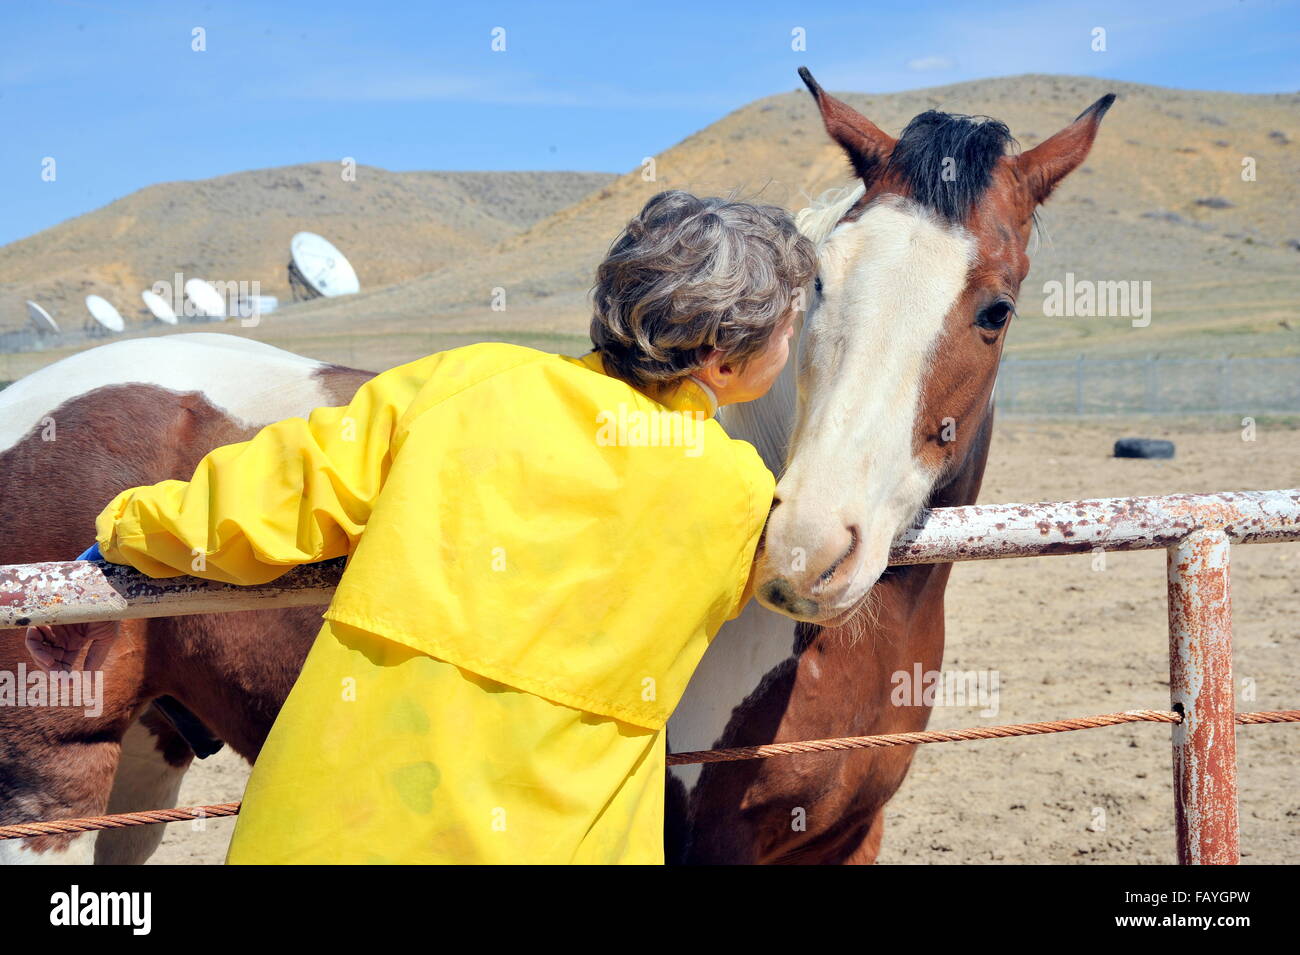 Female and horse bonding. Stock Photo